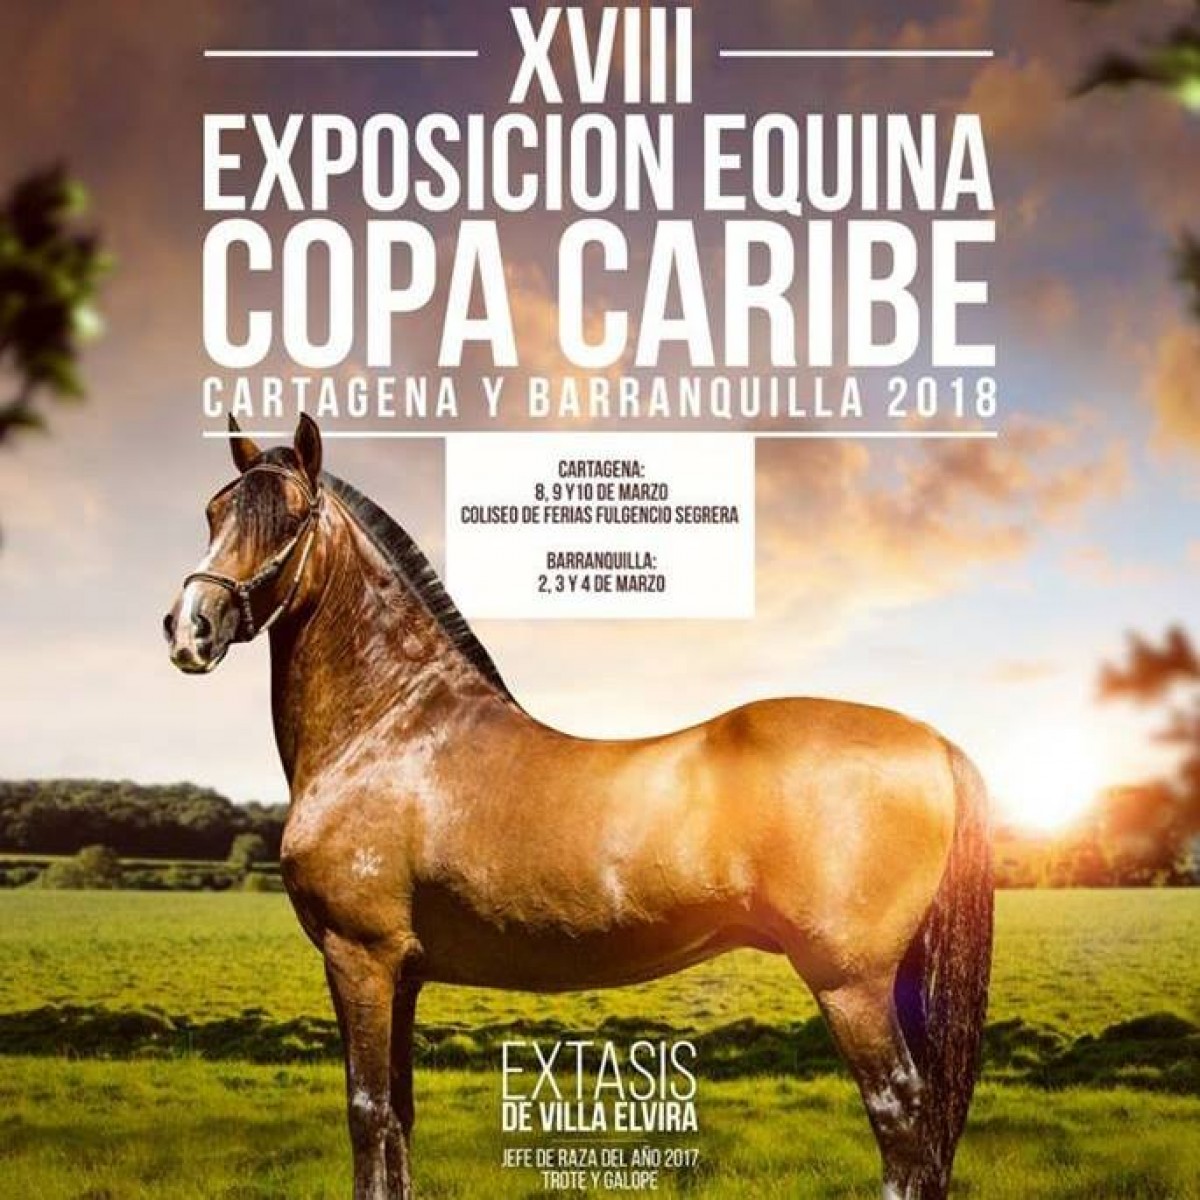 TRANSMISIÓN XVIII Exposición Equina Copa Caribe Cartagena Del 8 Al 10 De Marzo